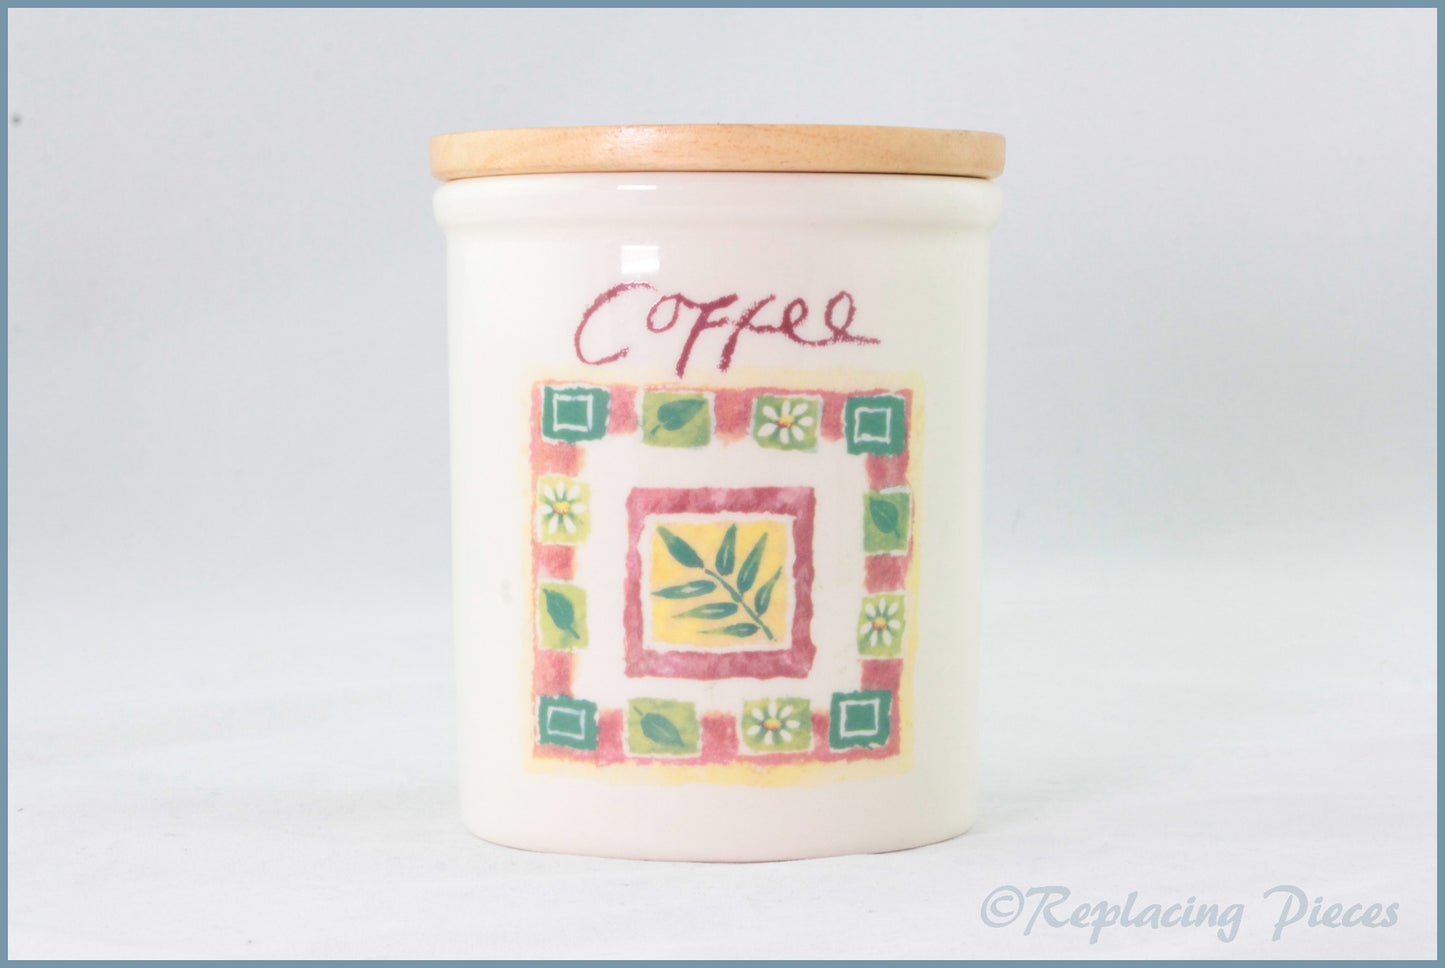 Cloverleaf - Unknown 1 - Storage Jar (Coffee)